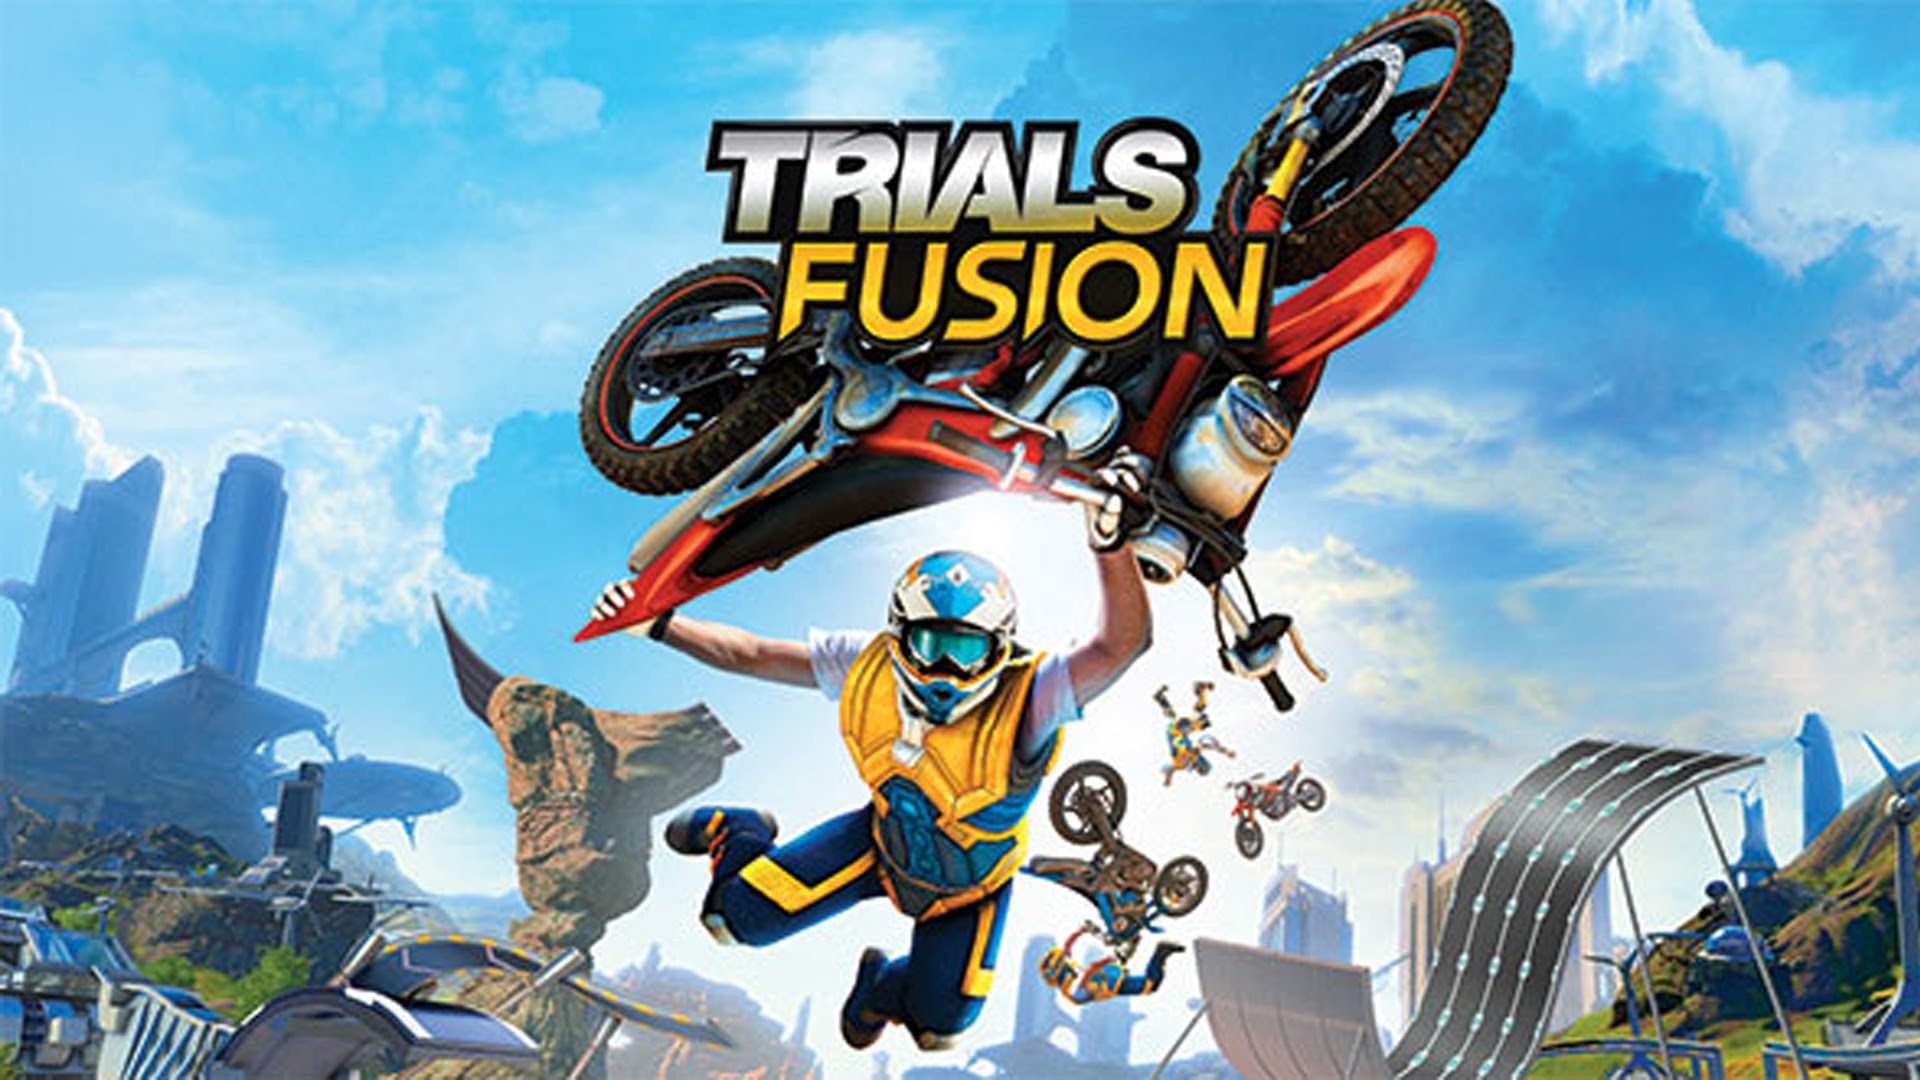 Zagrajmy w Trials Fusion (randomowo) - Polski Gameplay - 1080p